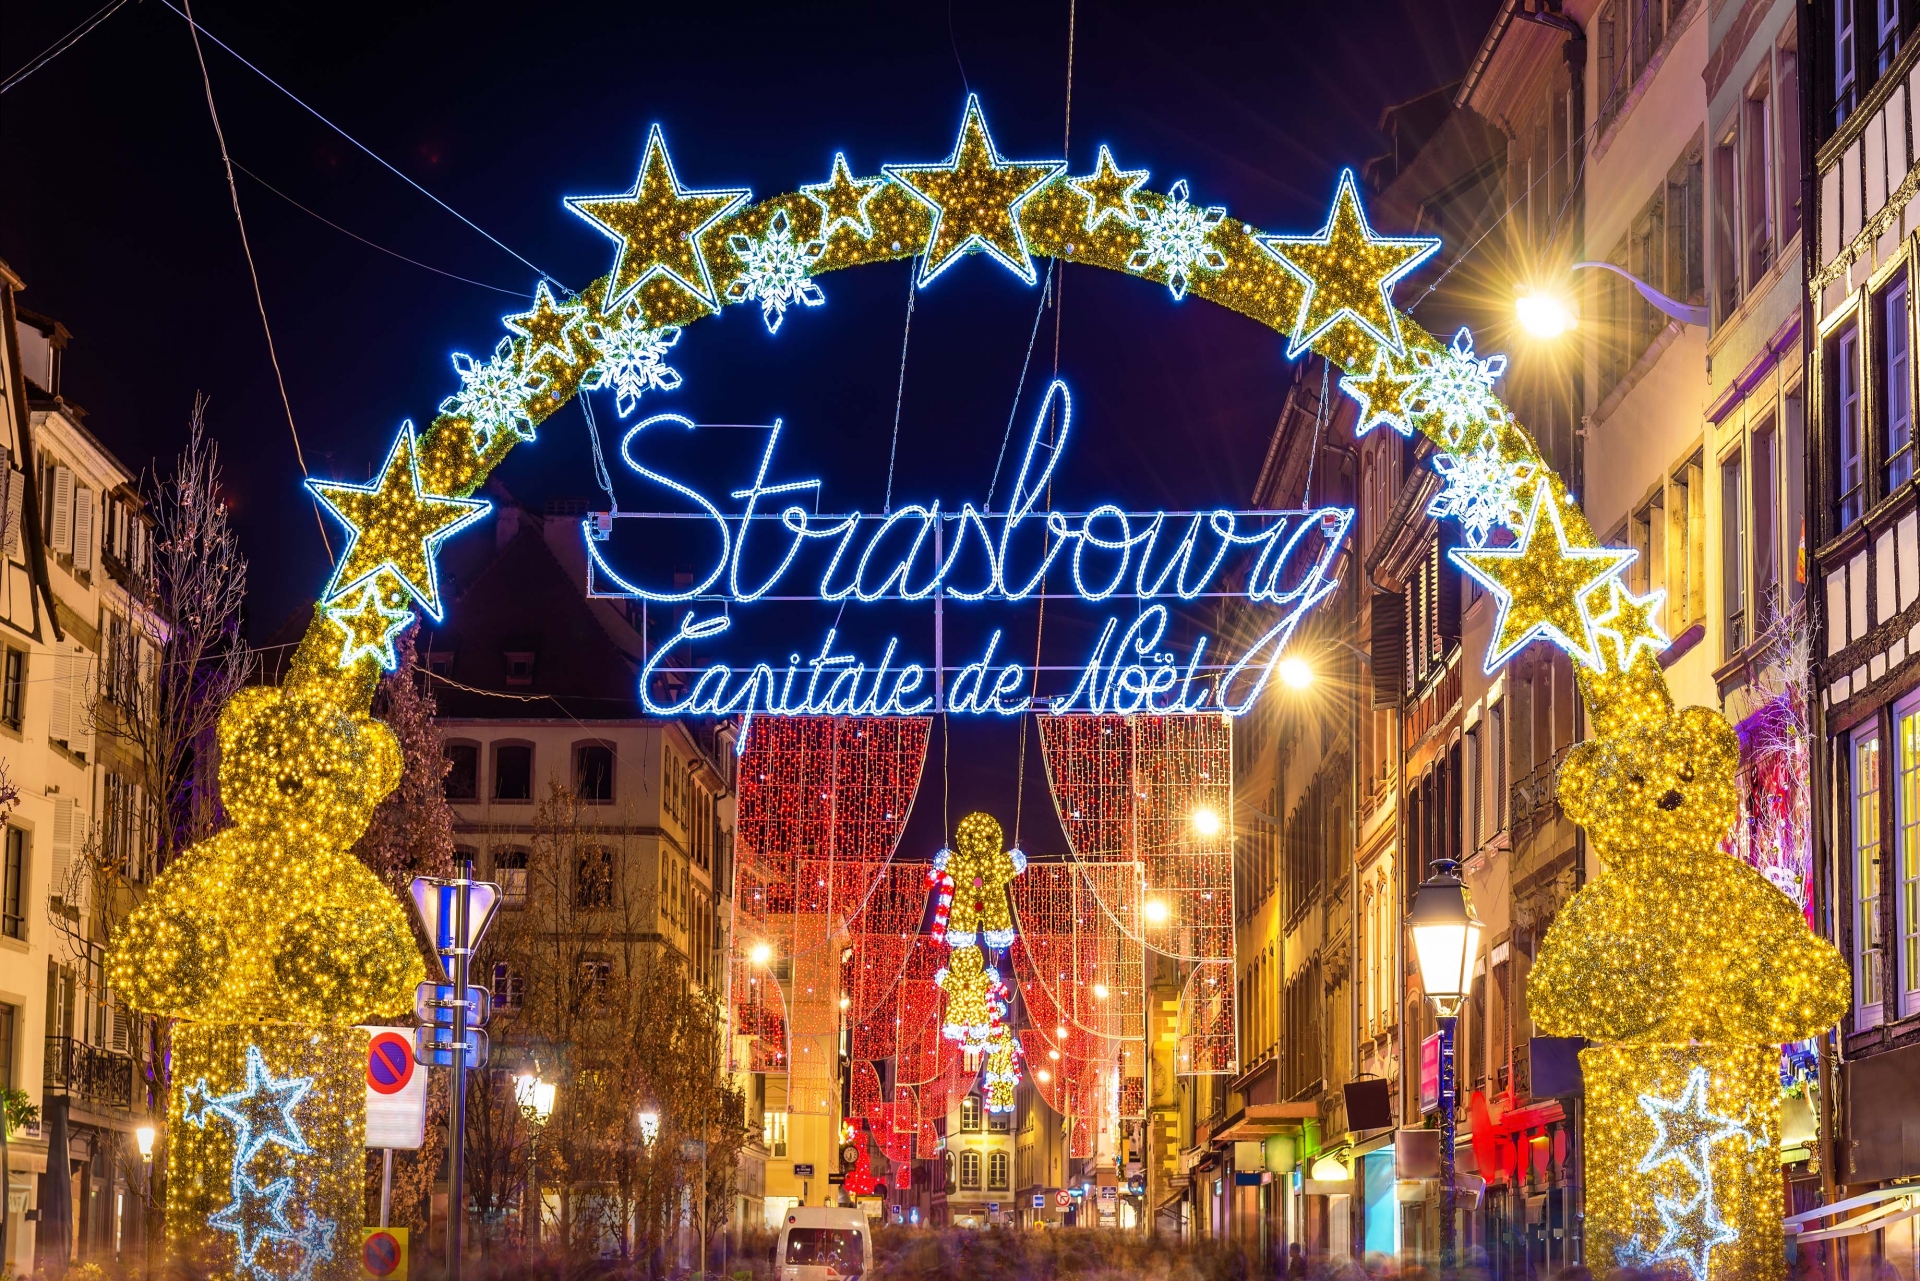 Strasbourg, thành phố được mệnh danh là “thủ đô Giáng sinh” của thế giới - Ảnh 1